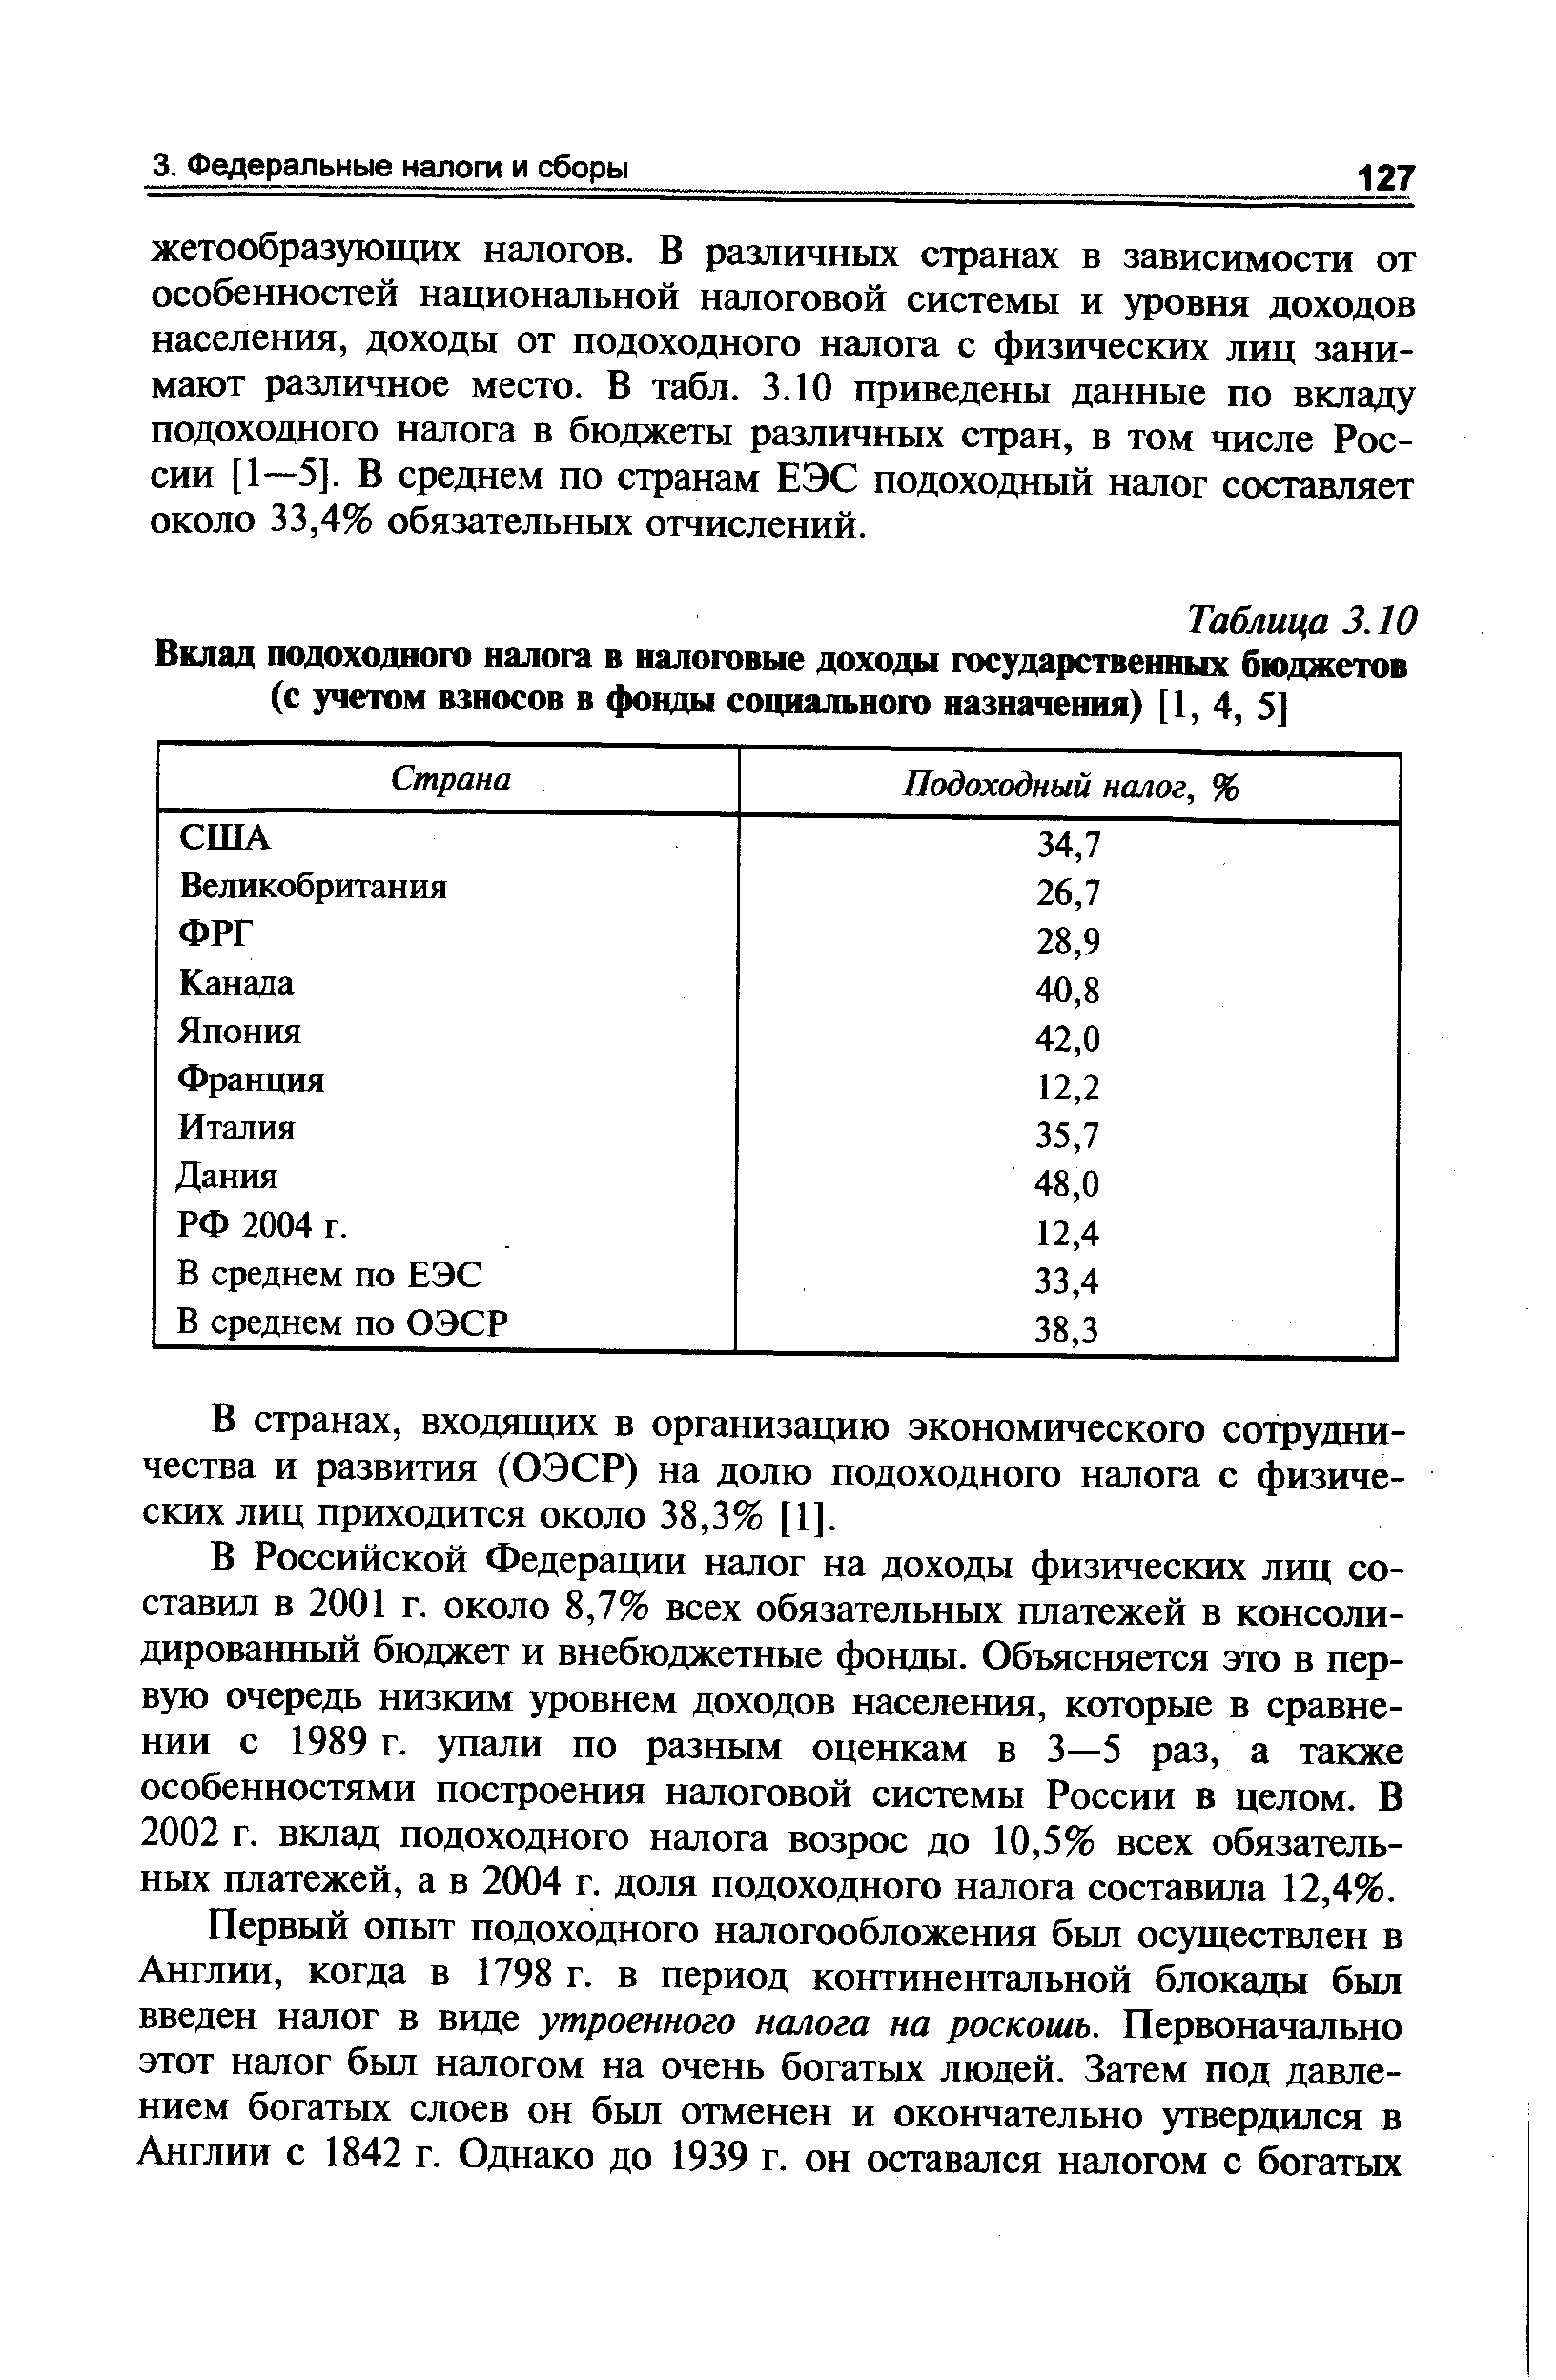 В Российской Федерации налог на доходы физических лиц составил в 2001 г. около 8,7% всех обязательных платежей в консолидированный бюджет и внебюджетные фонды. Объясняется это в первую очередь низким уровнем доходов населения, которые в сравнении с 1989 г. упали по разным оценкам в 3—5 раз, а также особенностями построения налоговой системы России в целом. В 2002 г. вклад подоходного налога возрос до 10,5% всех обязательных платежей, а в 2004 г. доля подоходного налога составила 12,4%.
